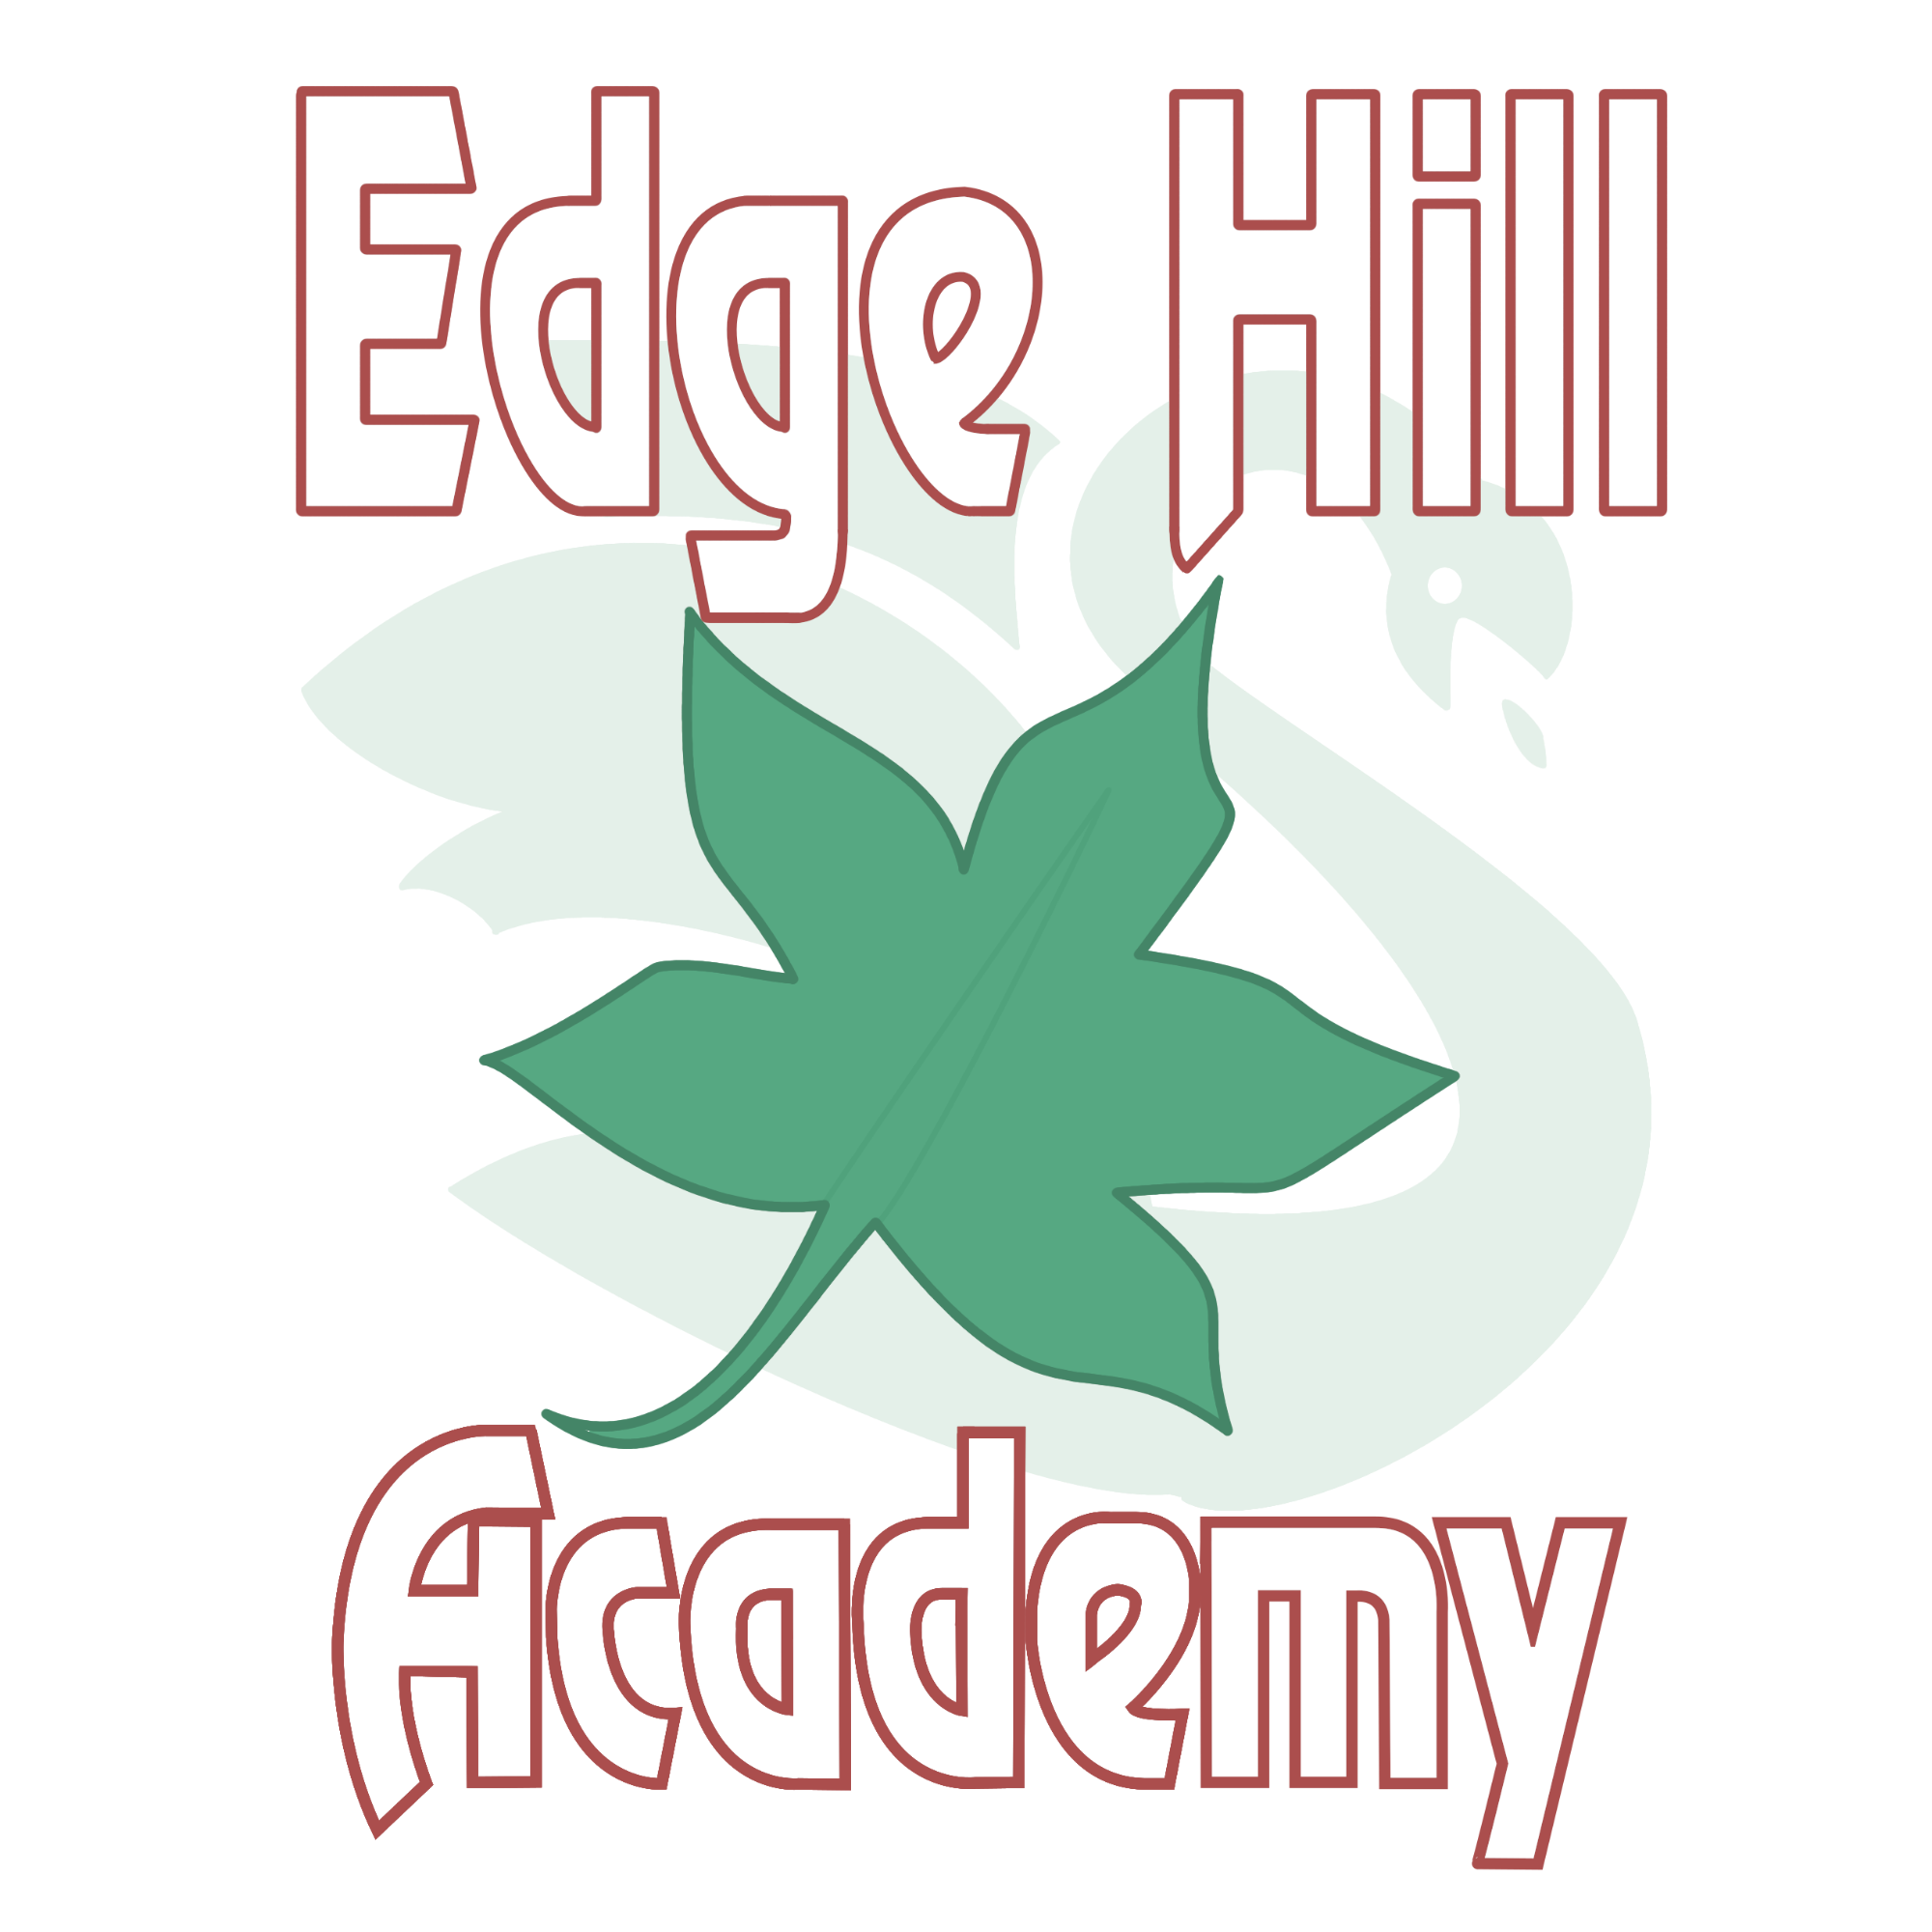 Edge Hill Academy